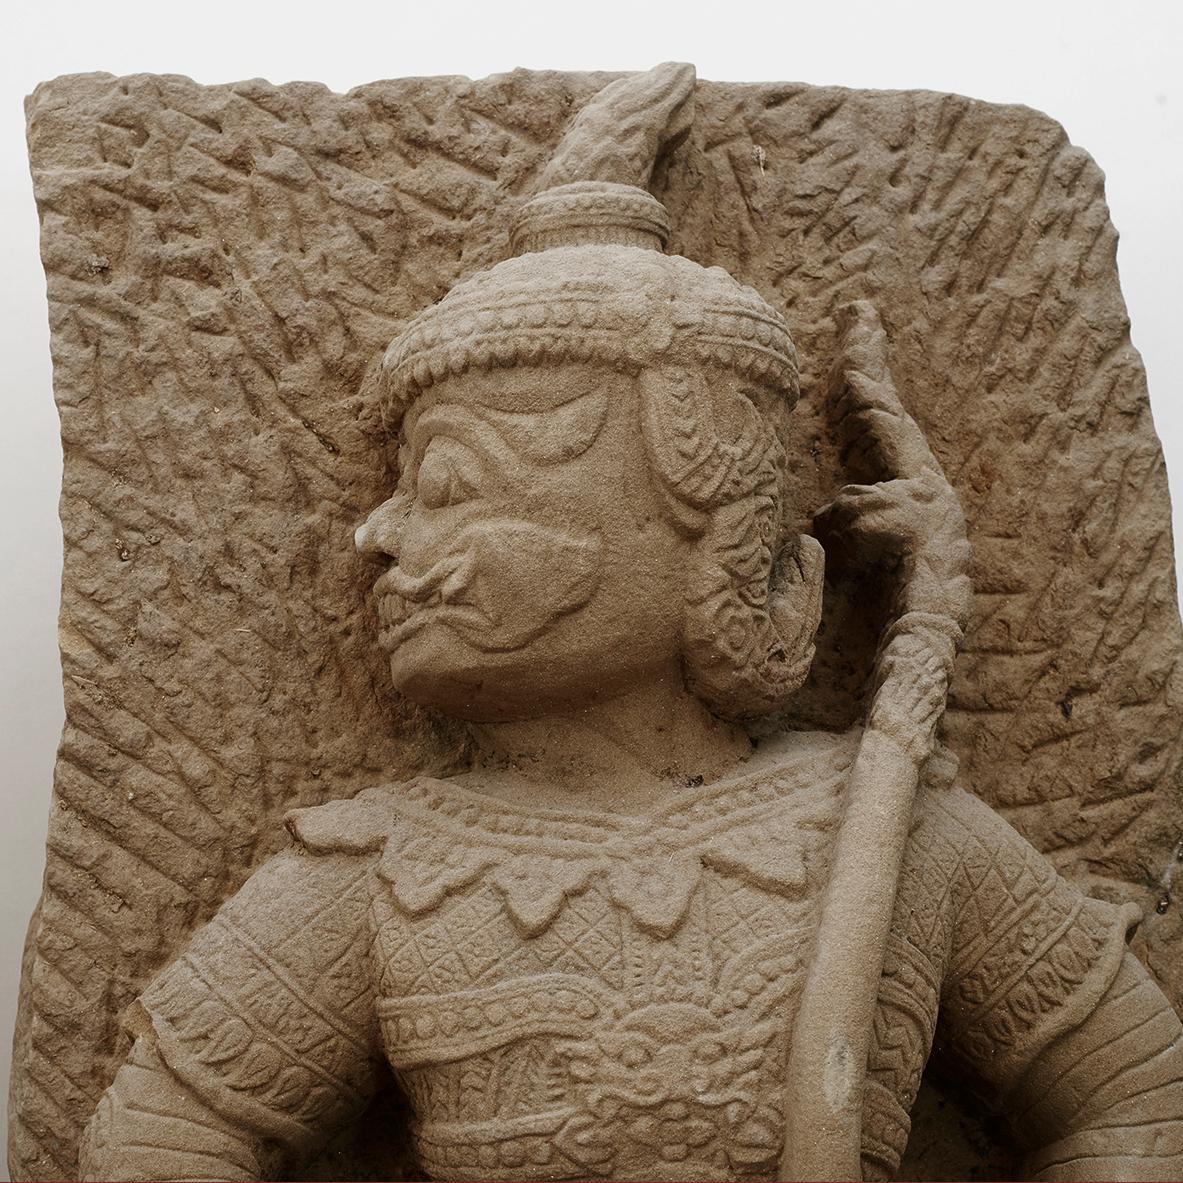 Ein seltenes Paar geschnitzter burmesischer Tempelwächter aus Sandstein. Stammt aus Paragode in Burma (15.-17. Jahrhundert).
Handgeschnitzt mit feinen Details. Jeder Schutz besteht aus zwei Teilen, die mit Schrauben zusammengefügt sind, die bis zu